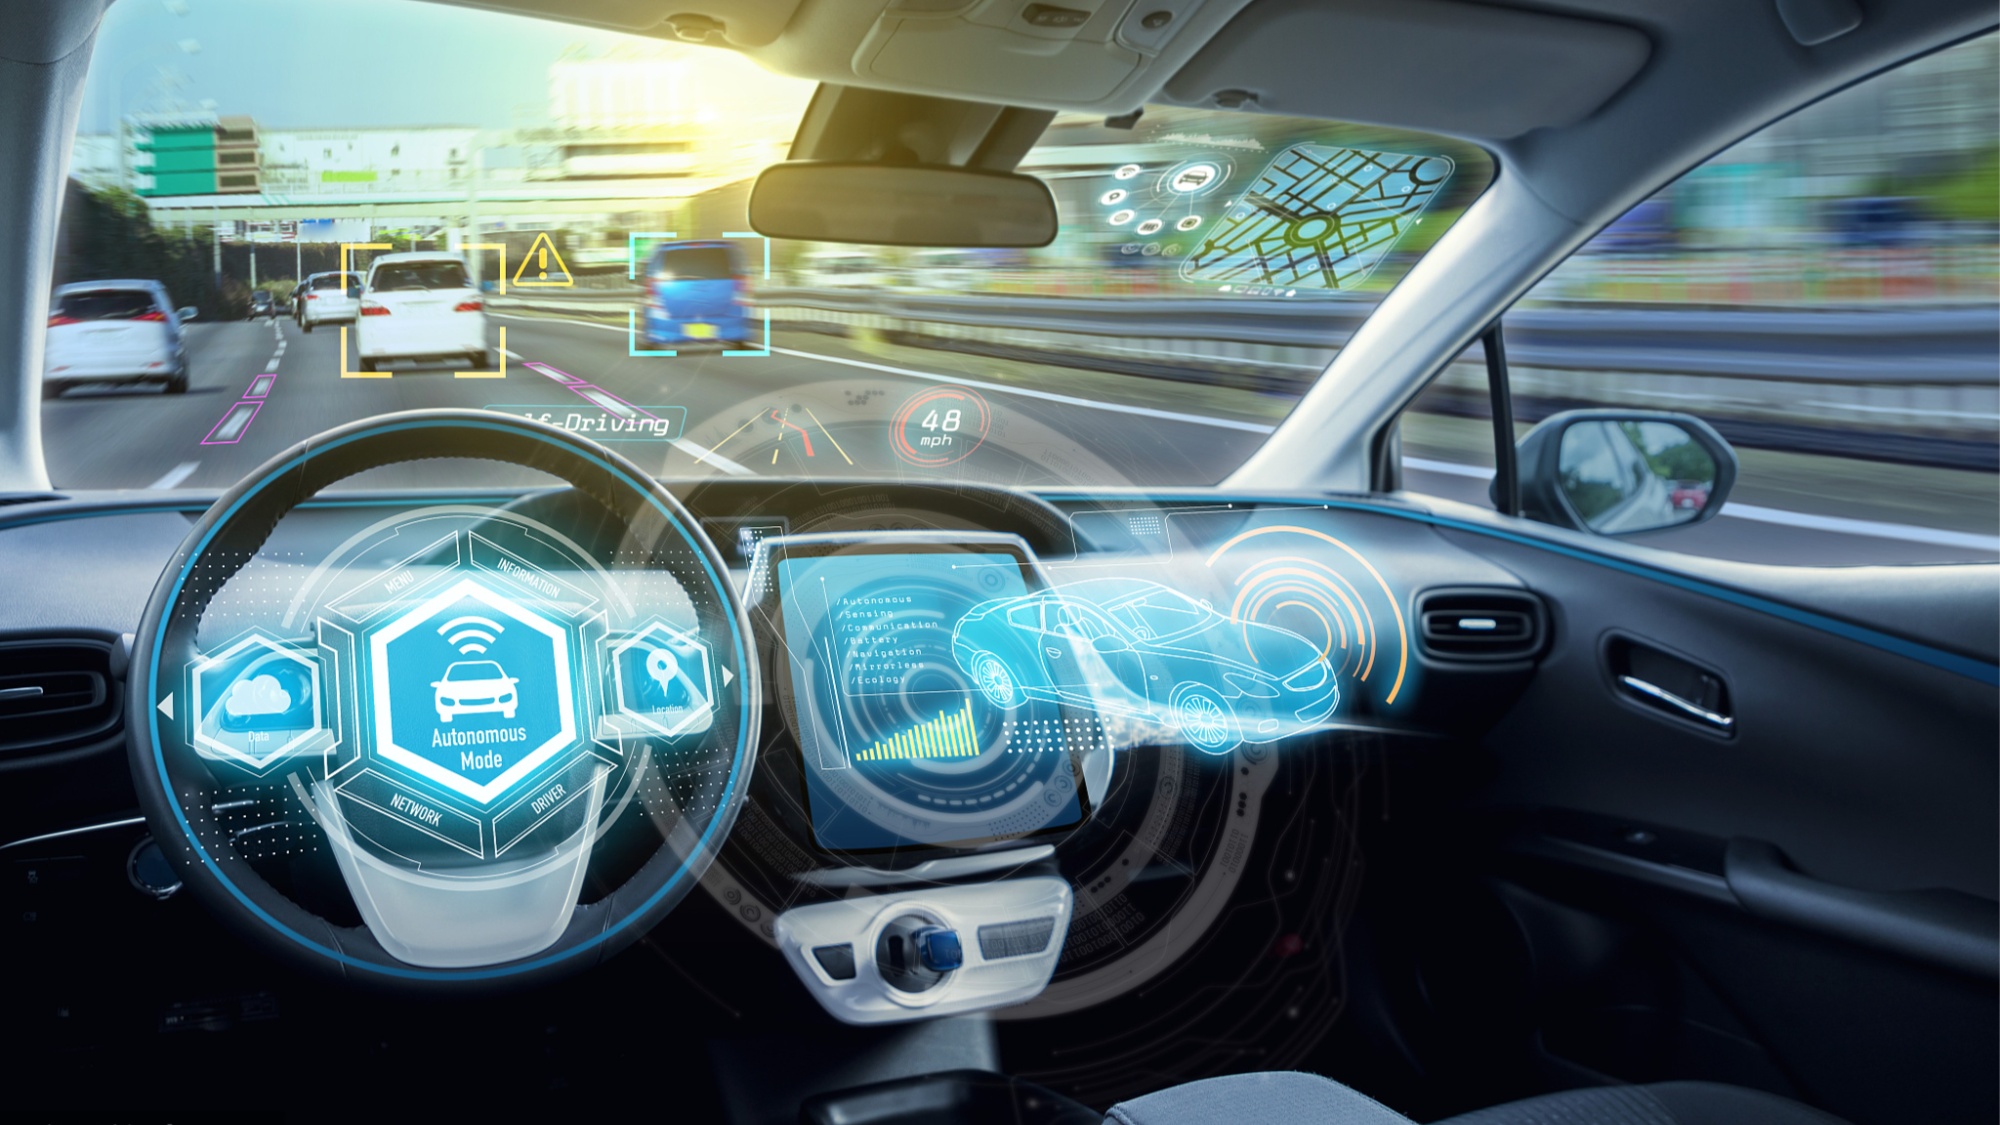 智能汽车创新须重视数据安全